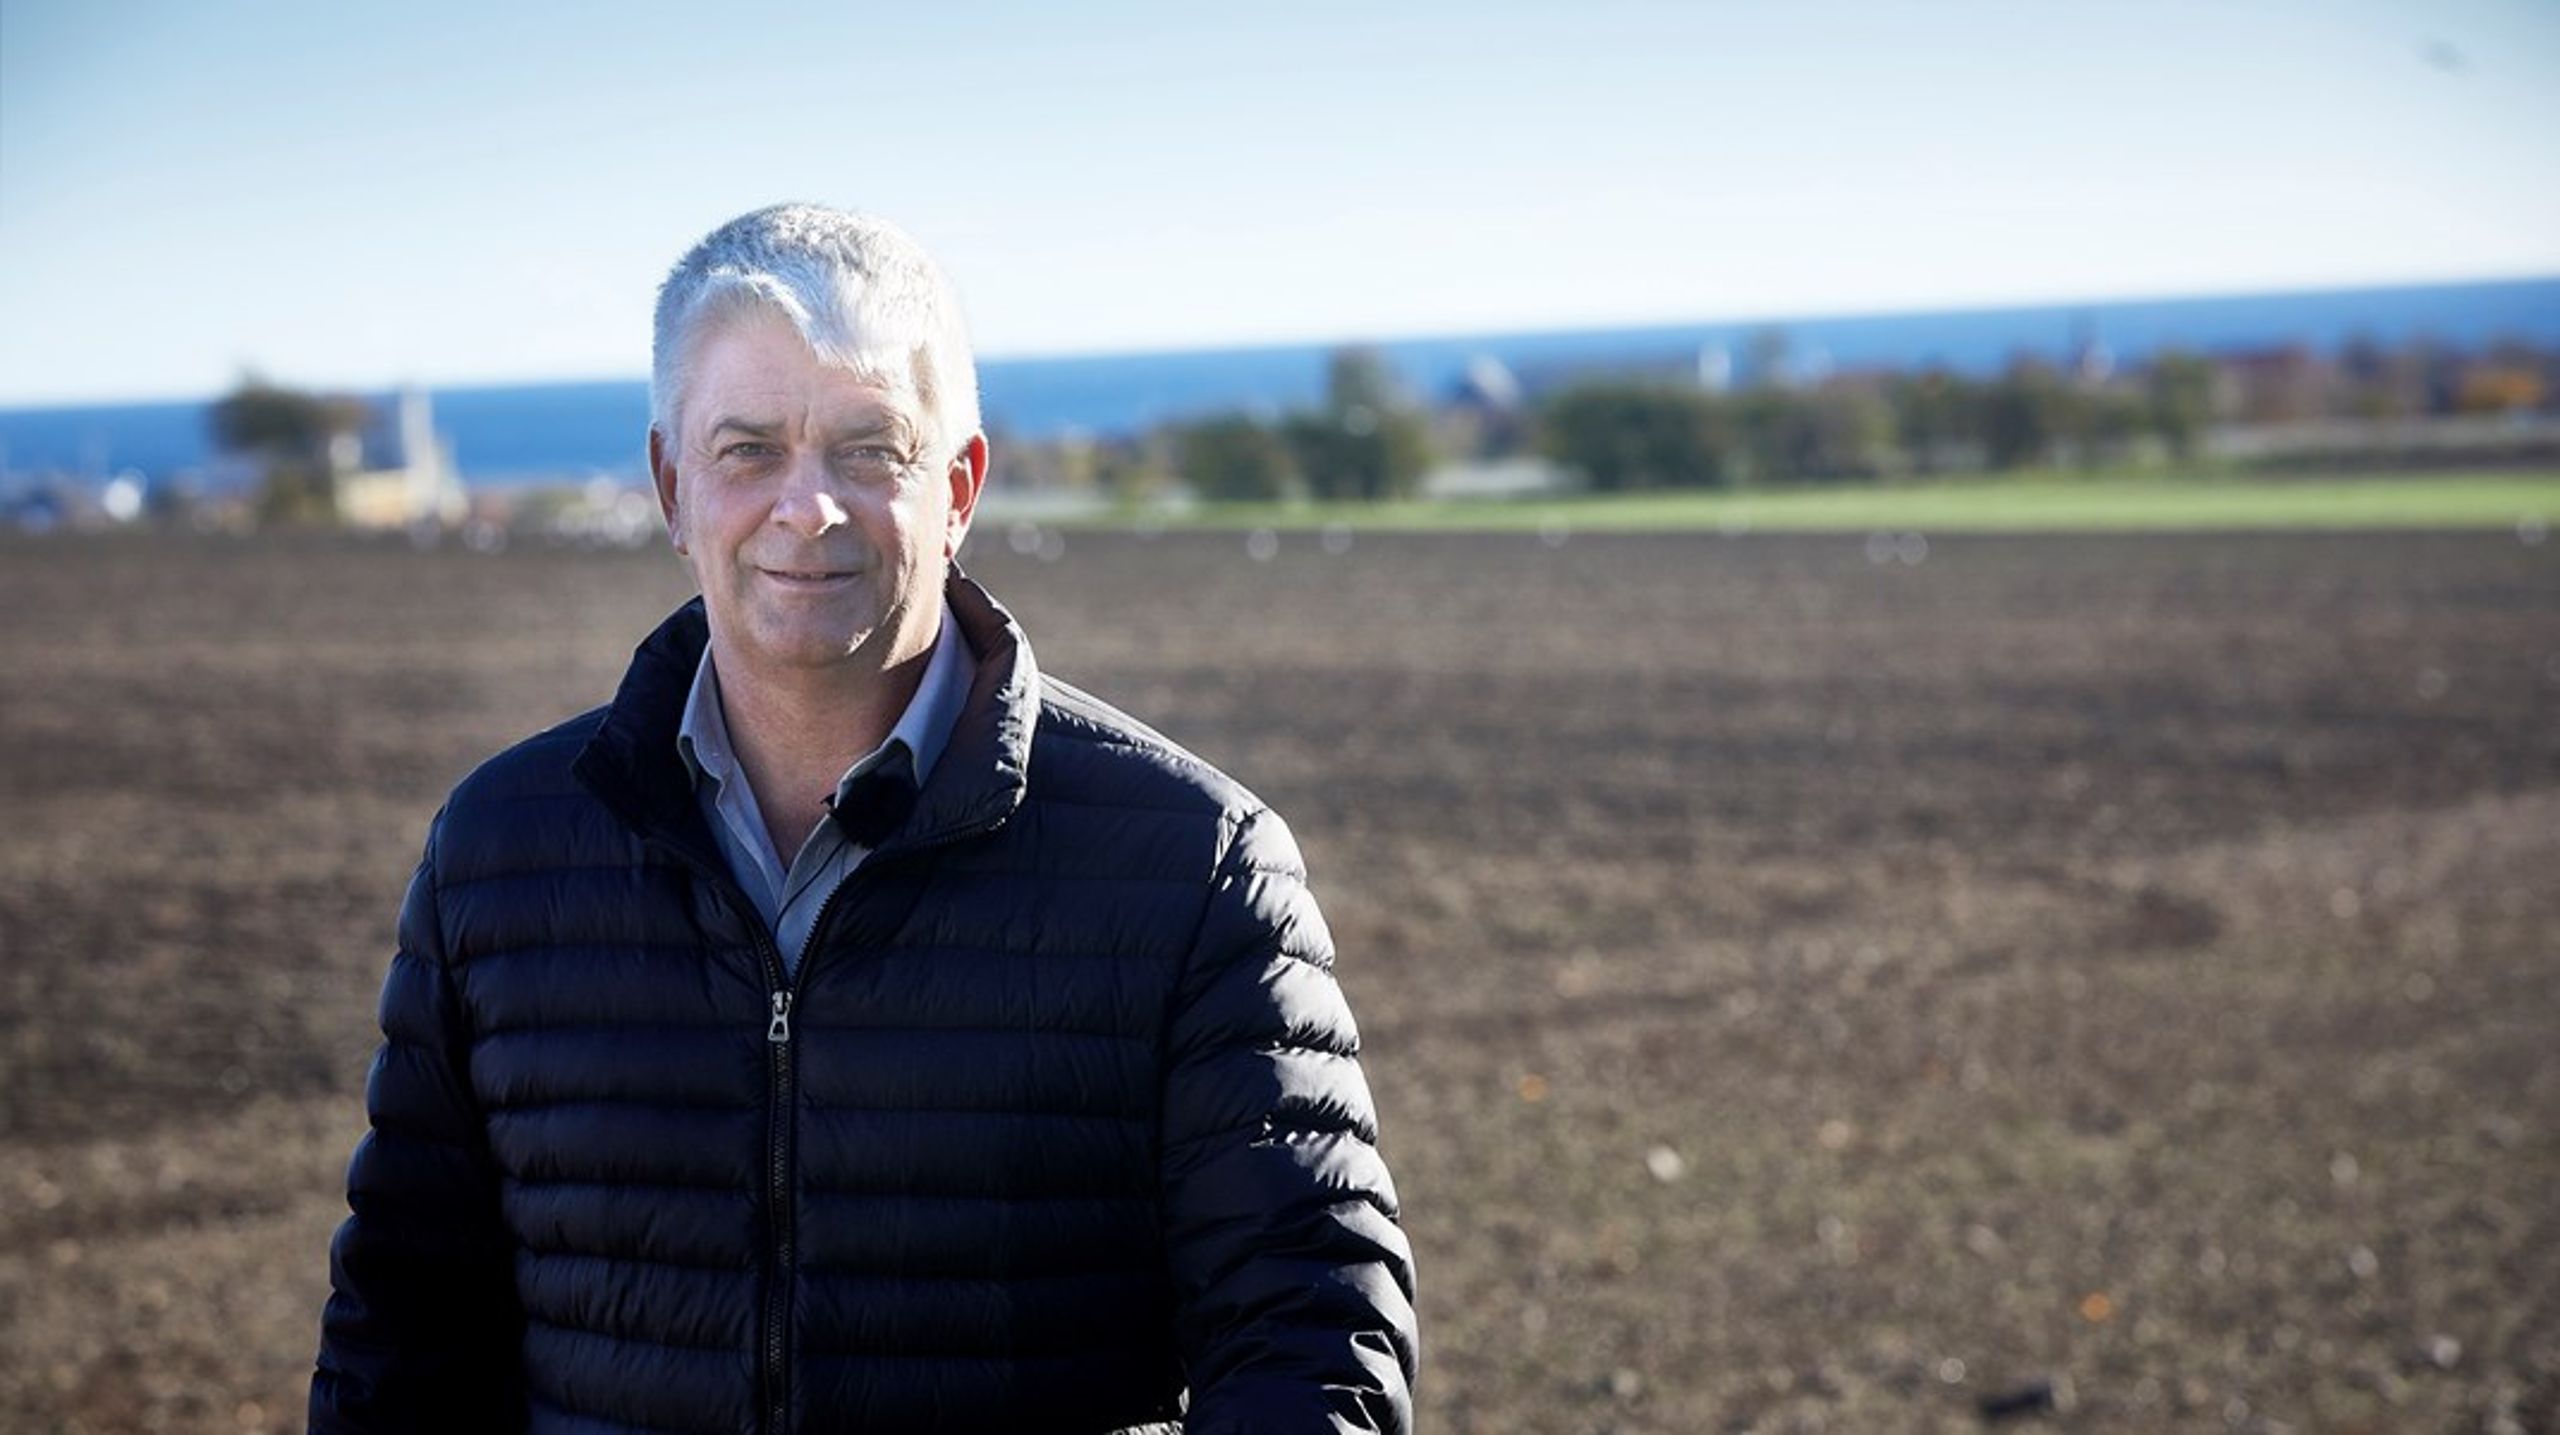 Landbrug &amp; Fødevarer genvælger&nbsp;Thor Gunnar Kofoed som viceformand.